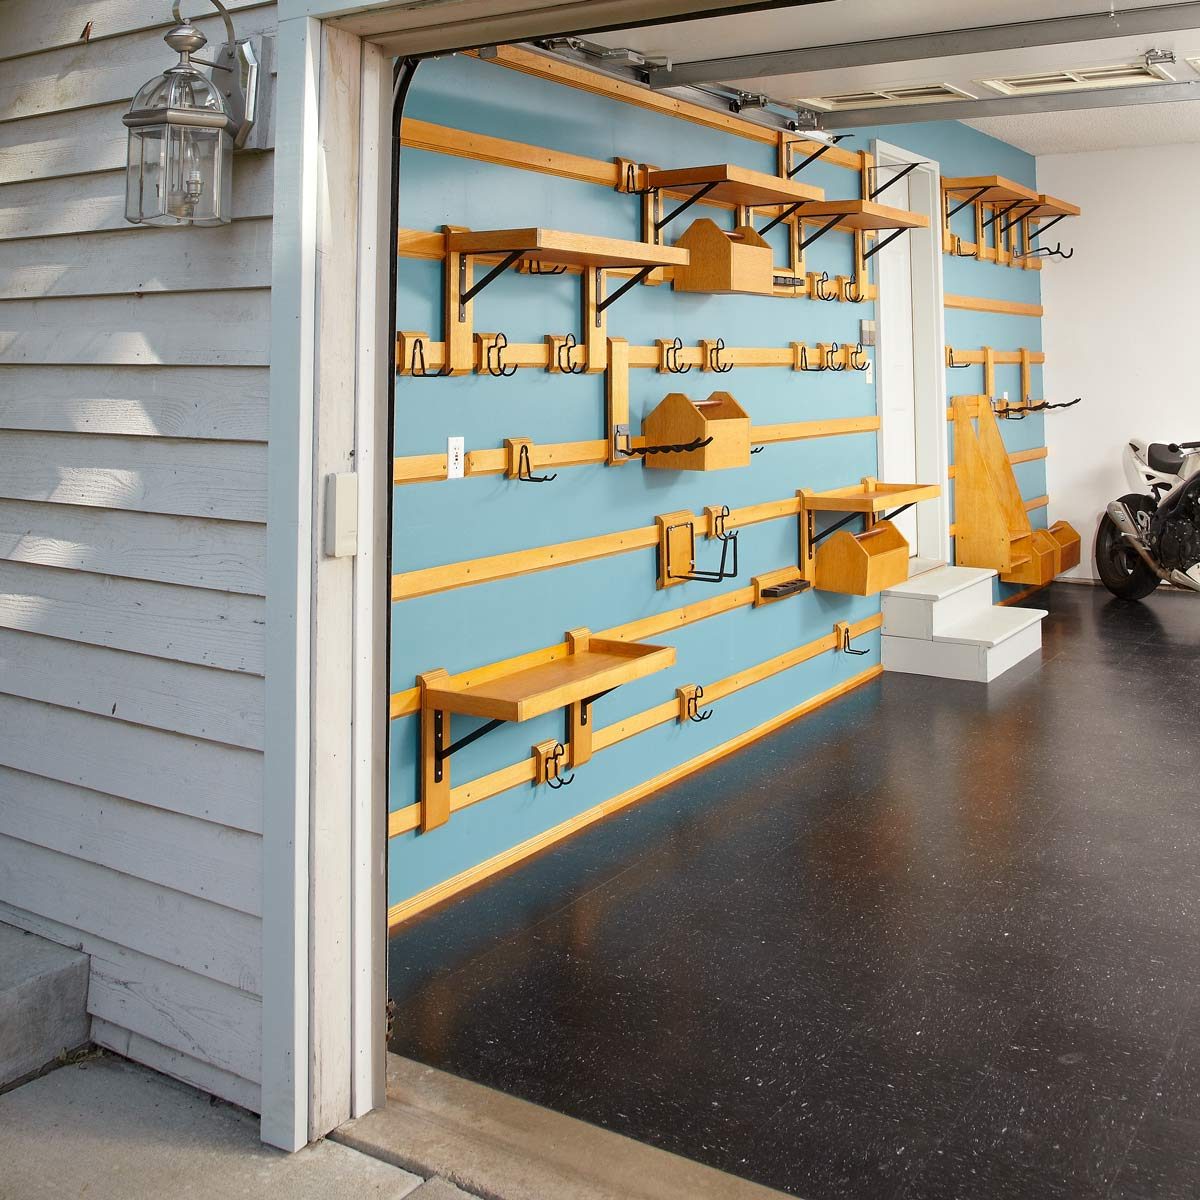 41 Garage Storage Ideas to Help You Stay Organized